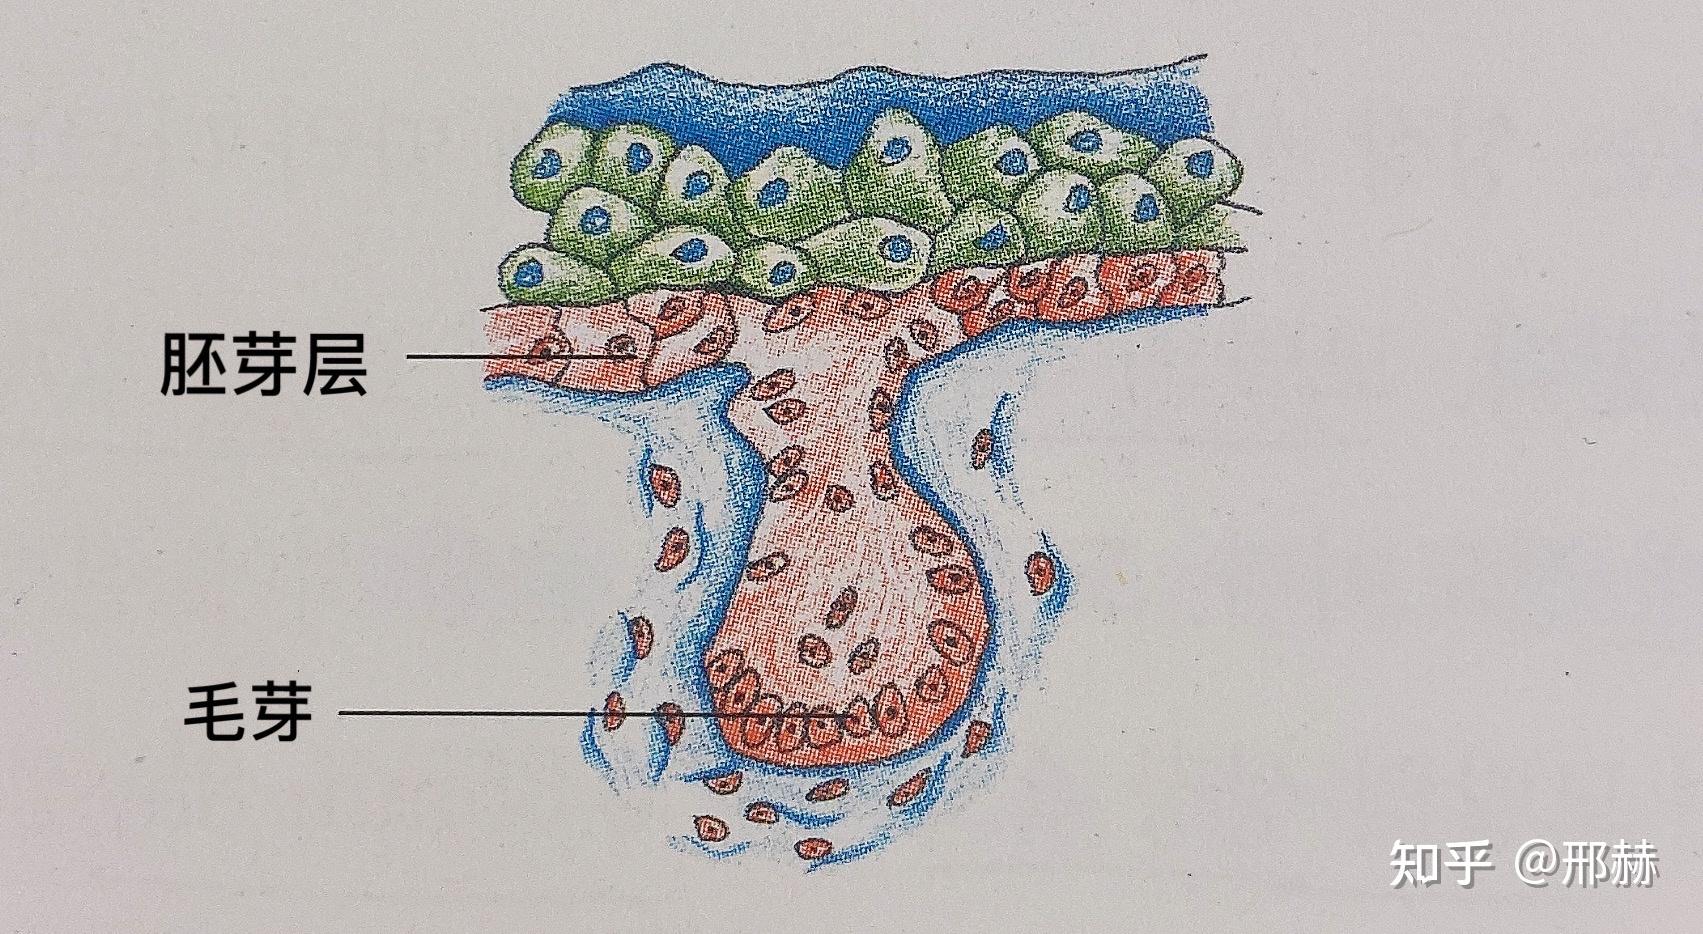 种子的胚根和胚芽图片-图库-五毛网